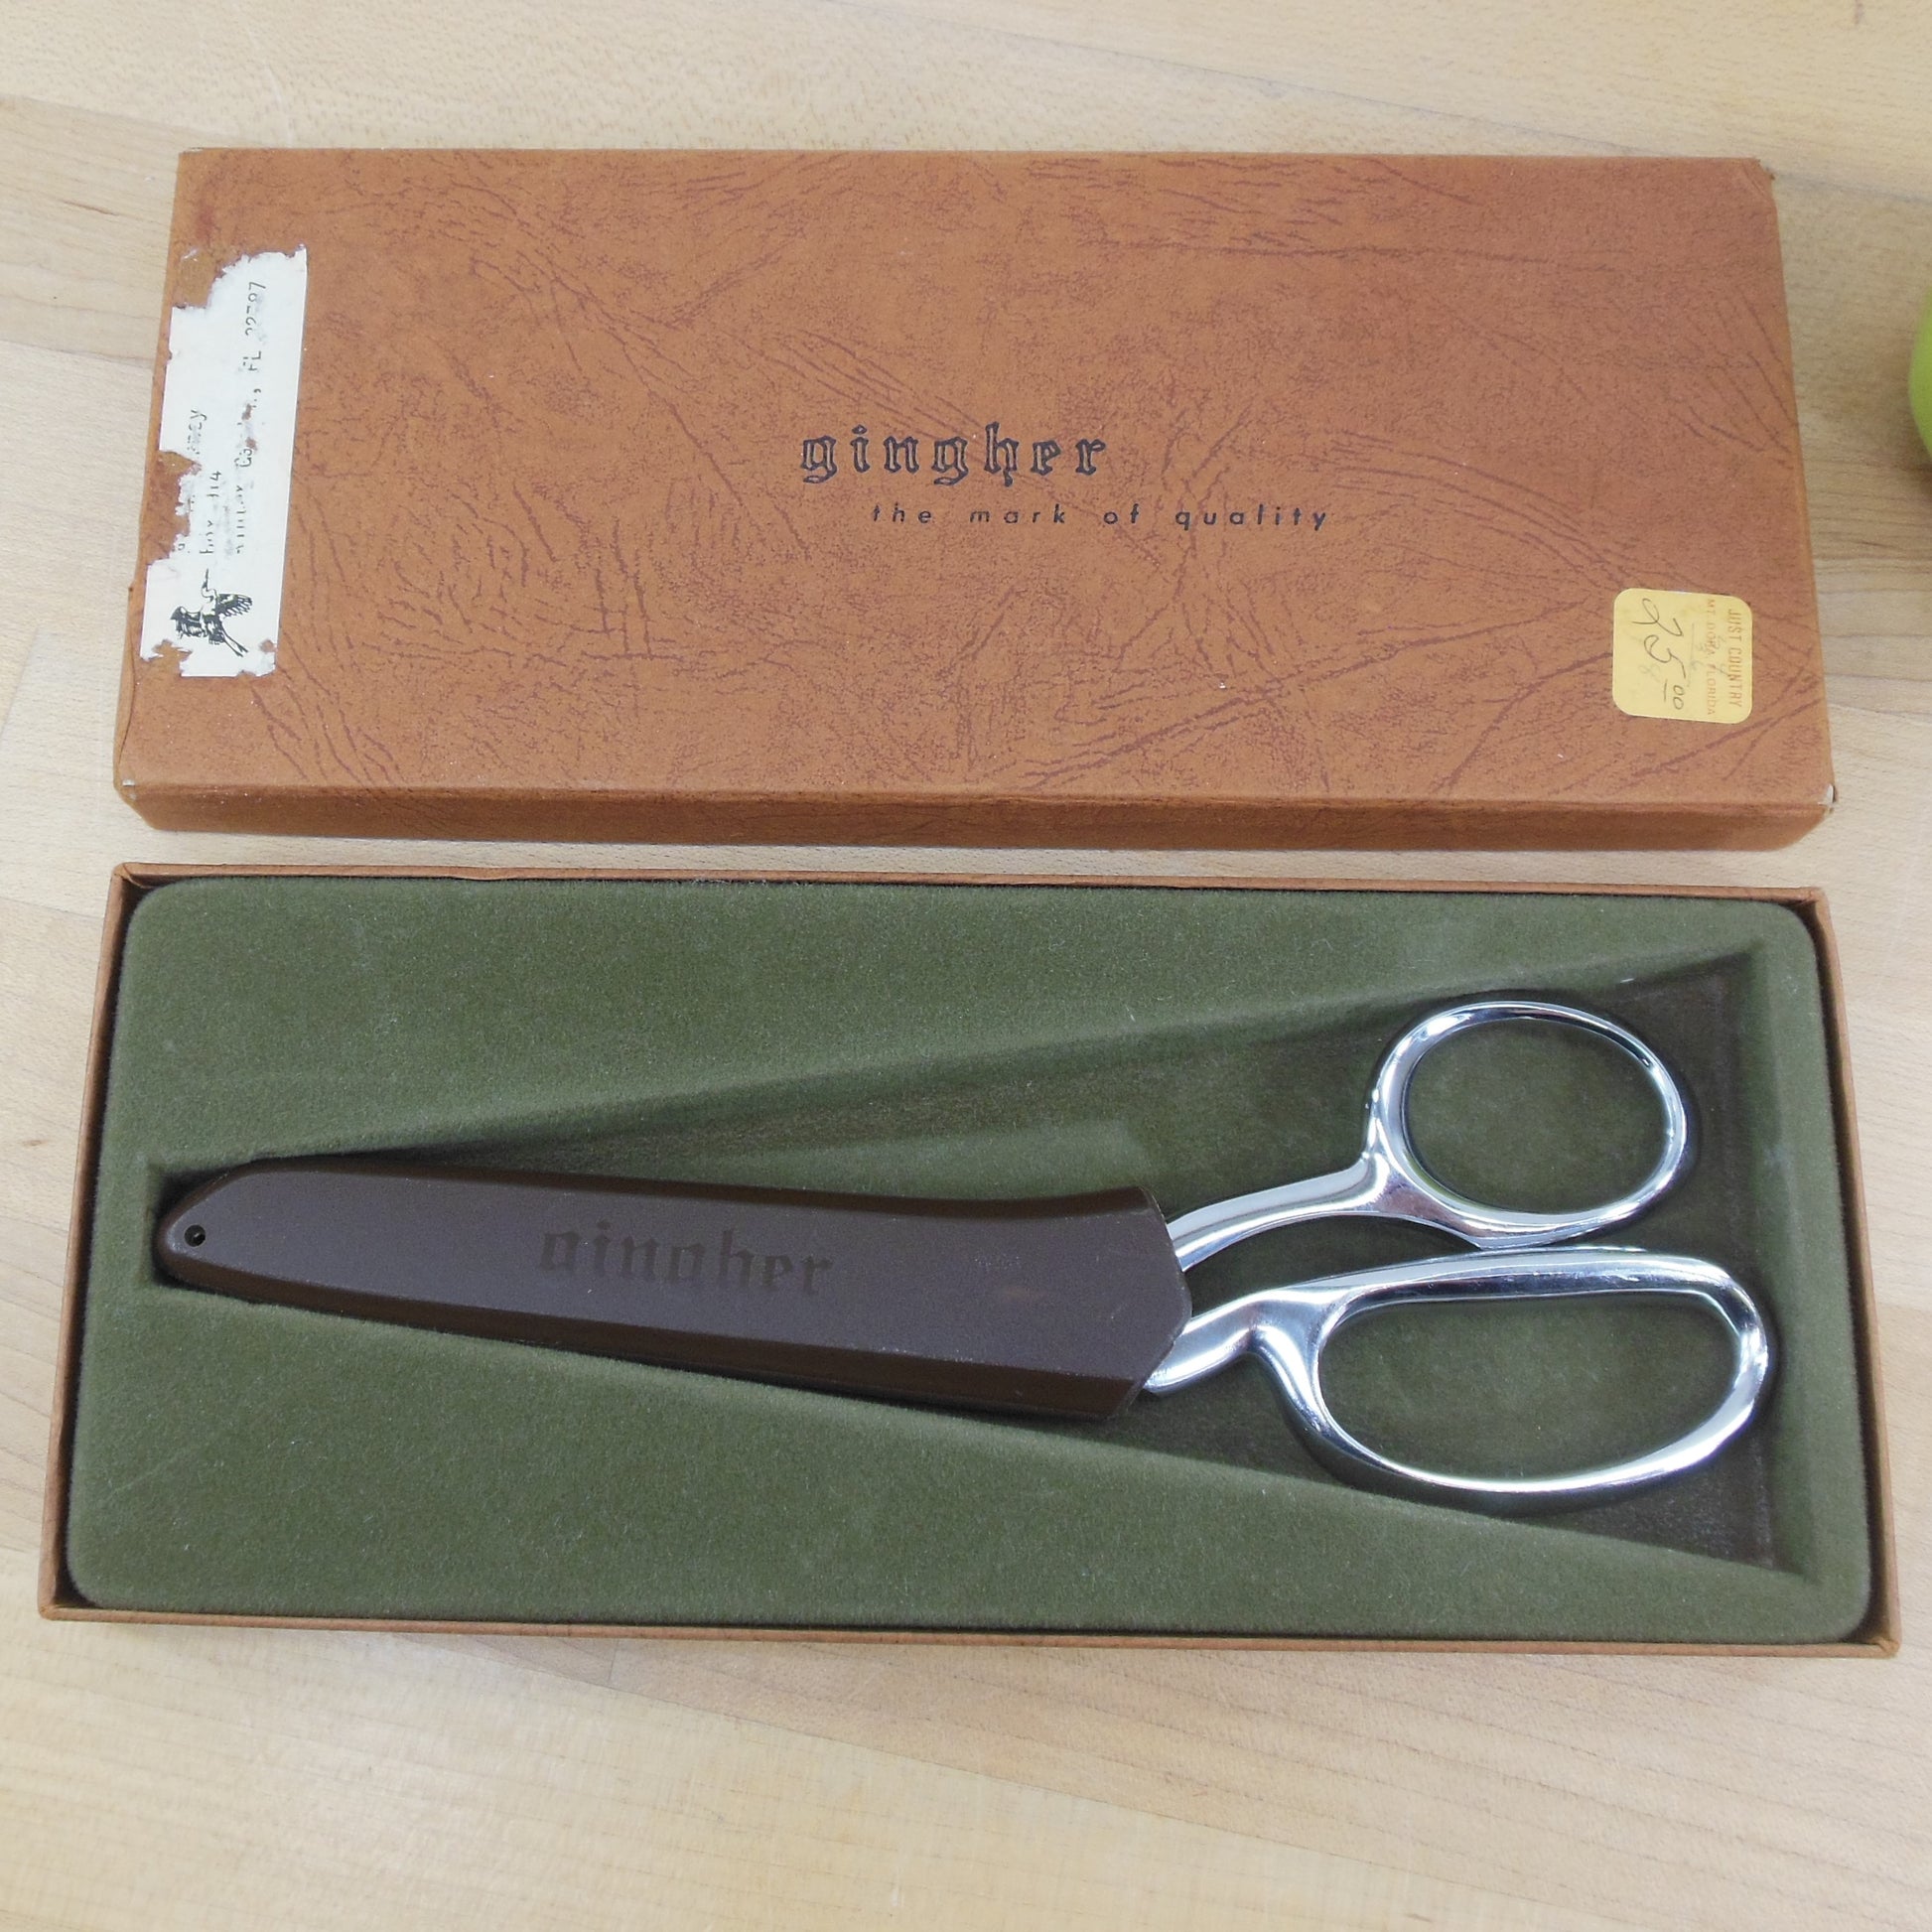  Gingher Scissors